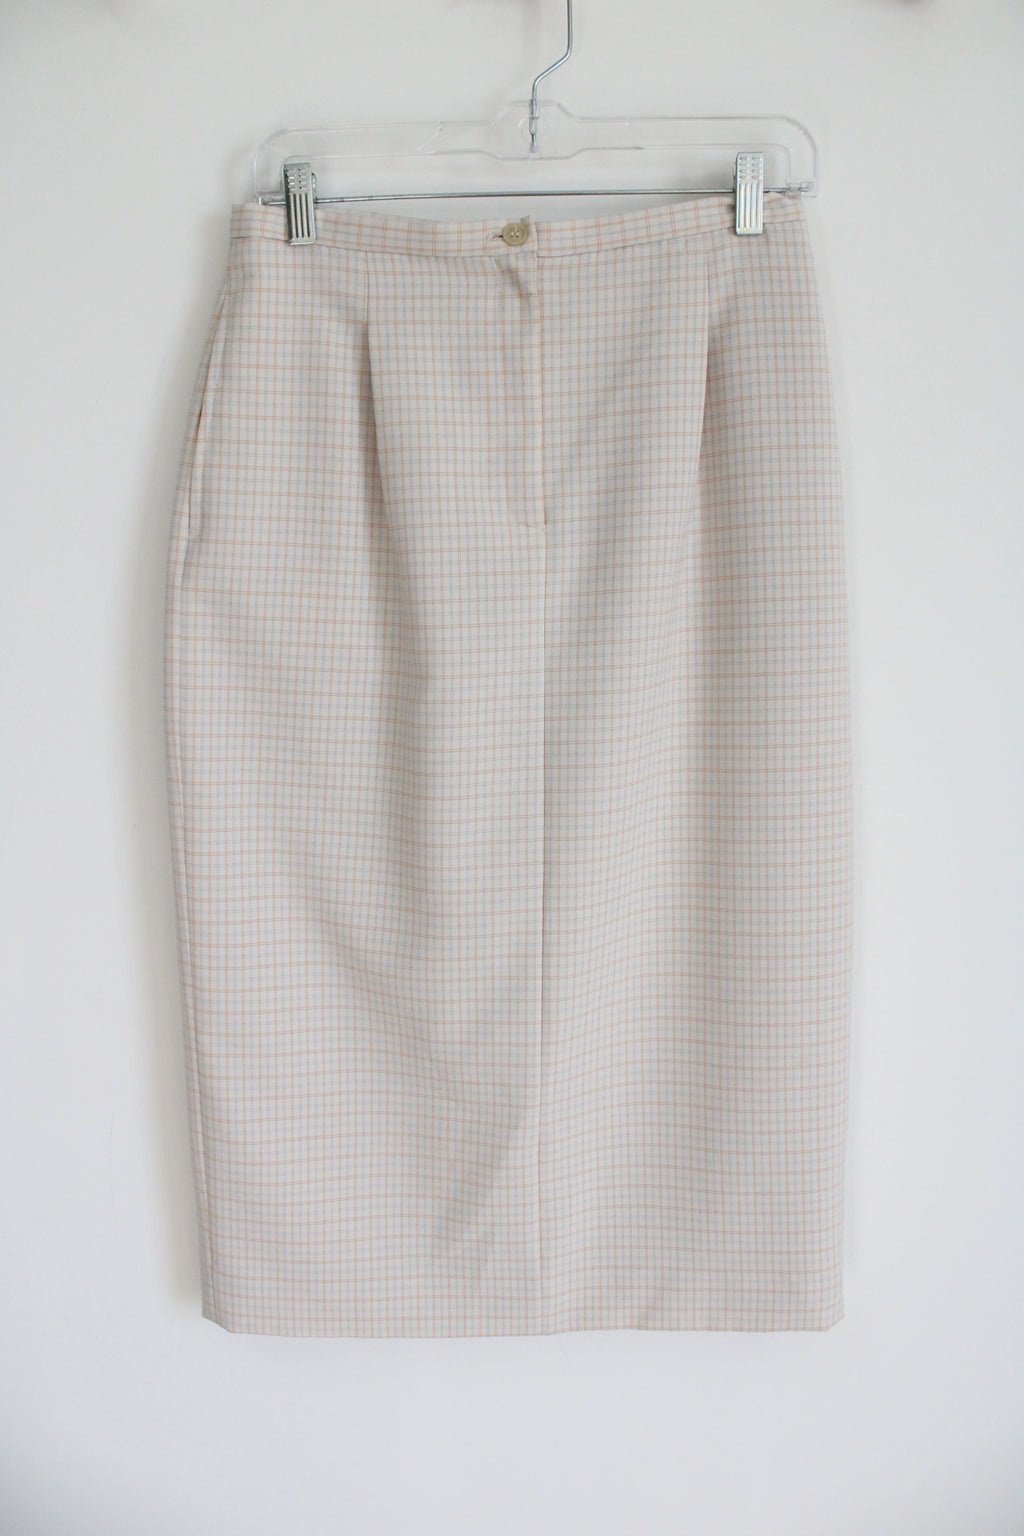 Vintage Petite Sophisticate Cream Plaid Skirt | 10